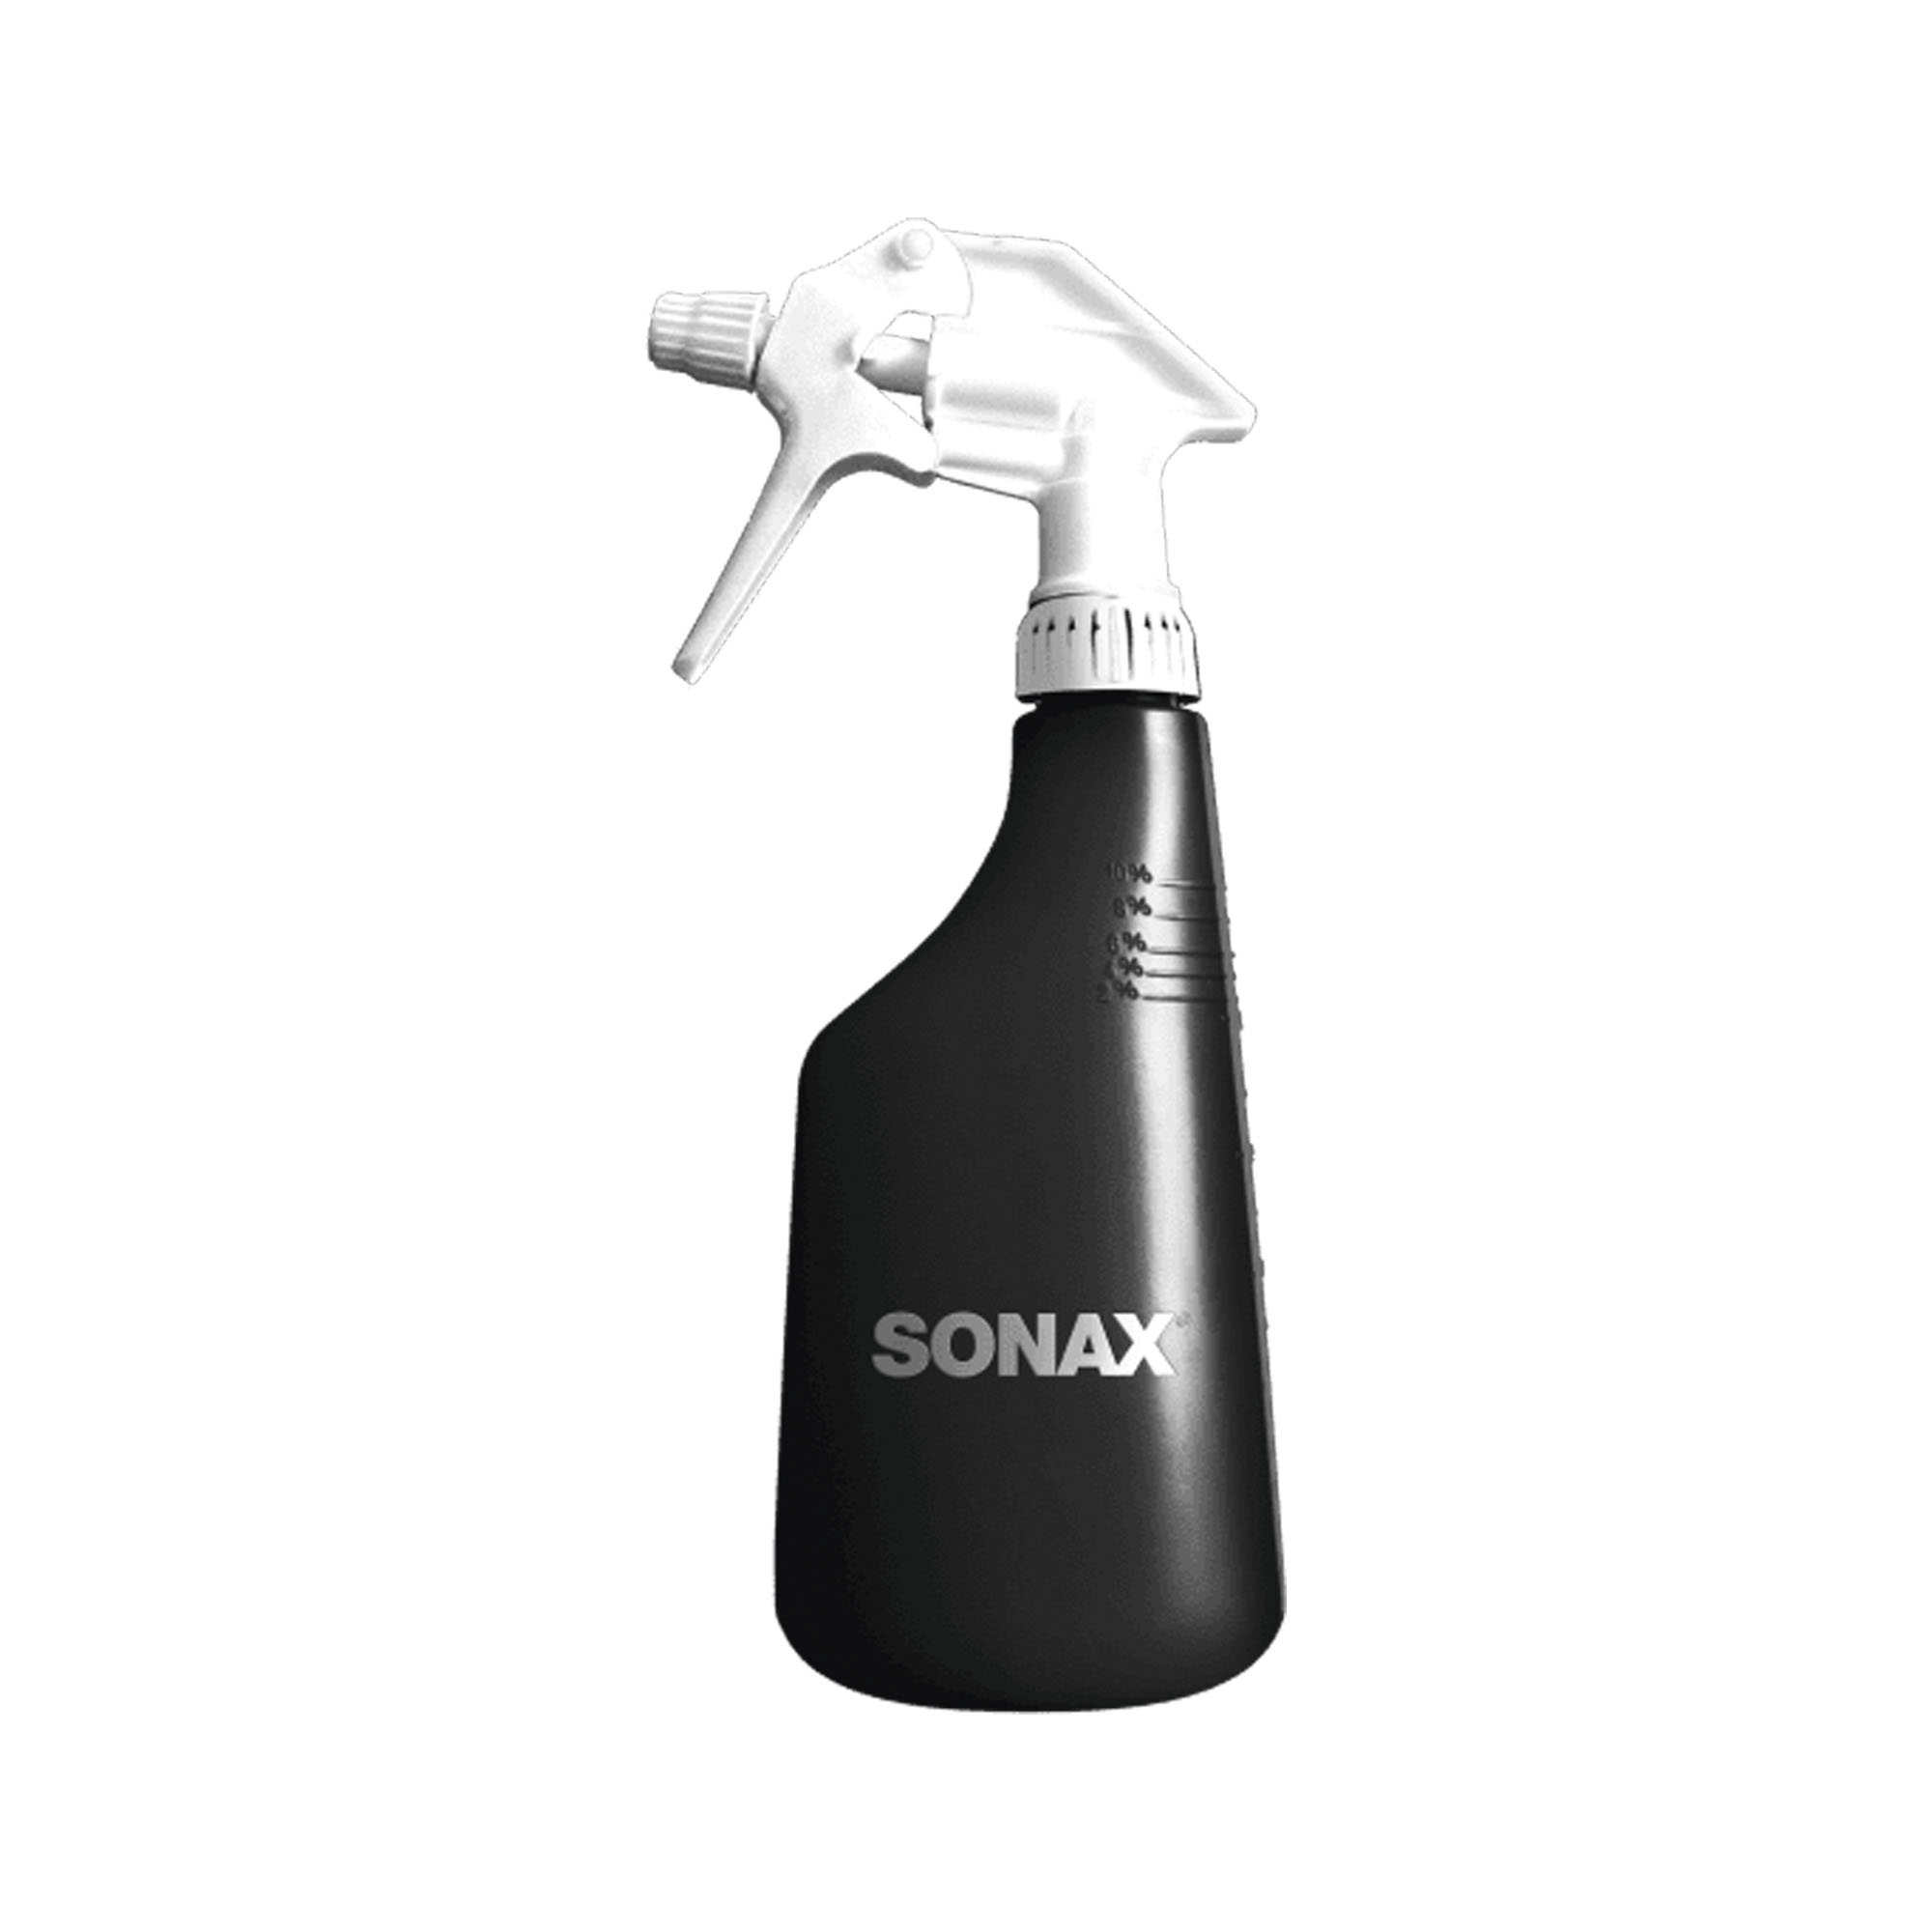 Sonax SprayBoy 600ml